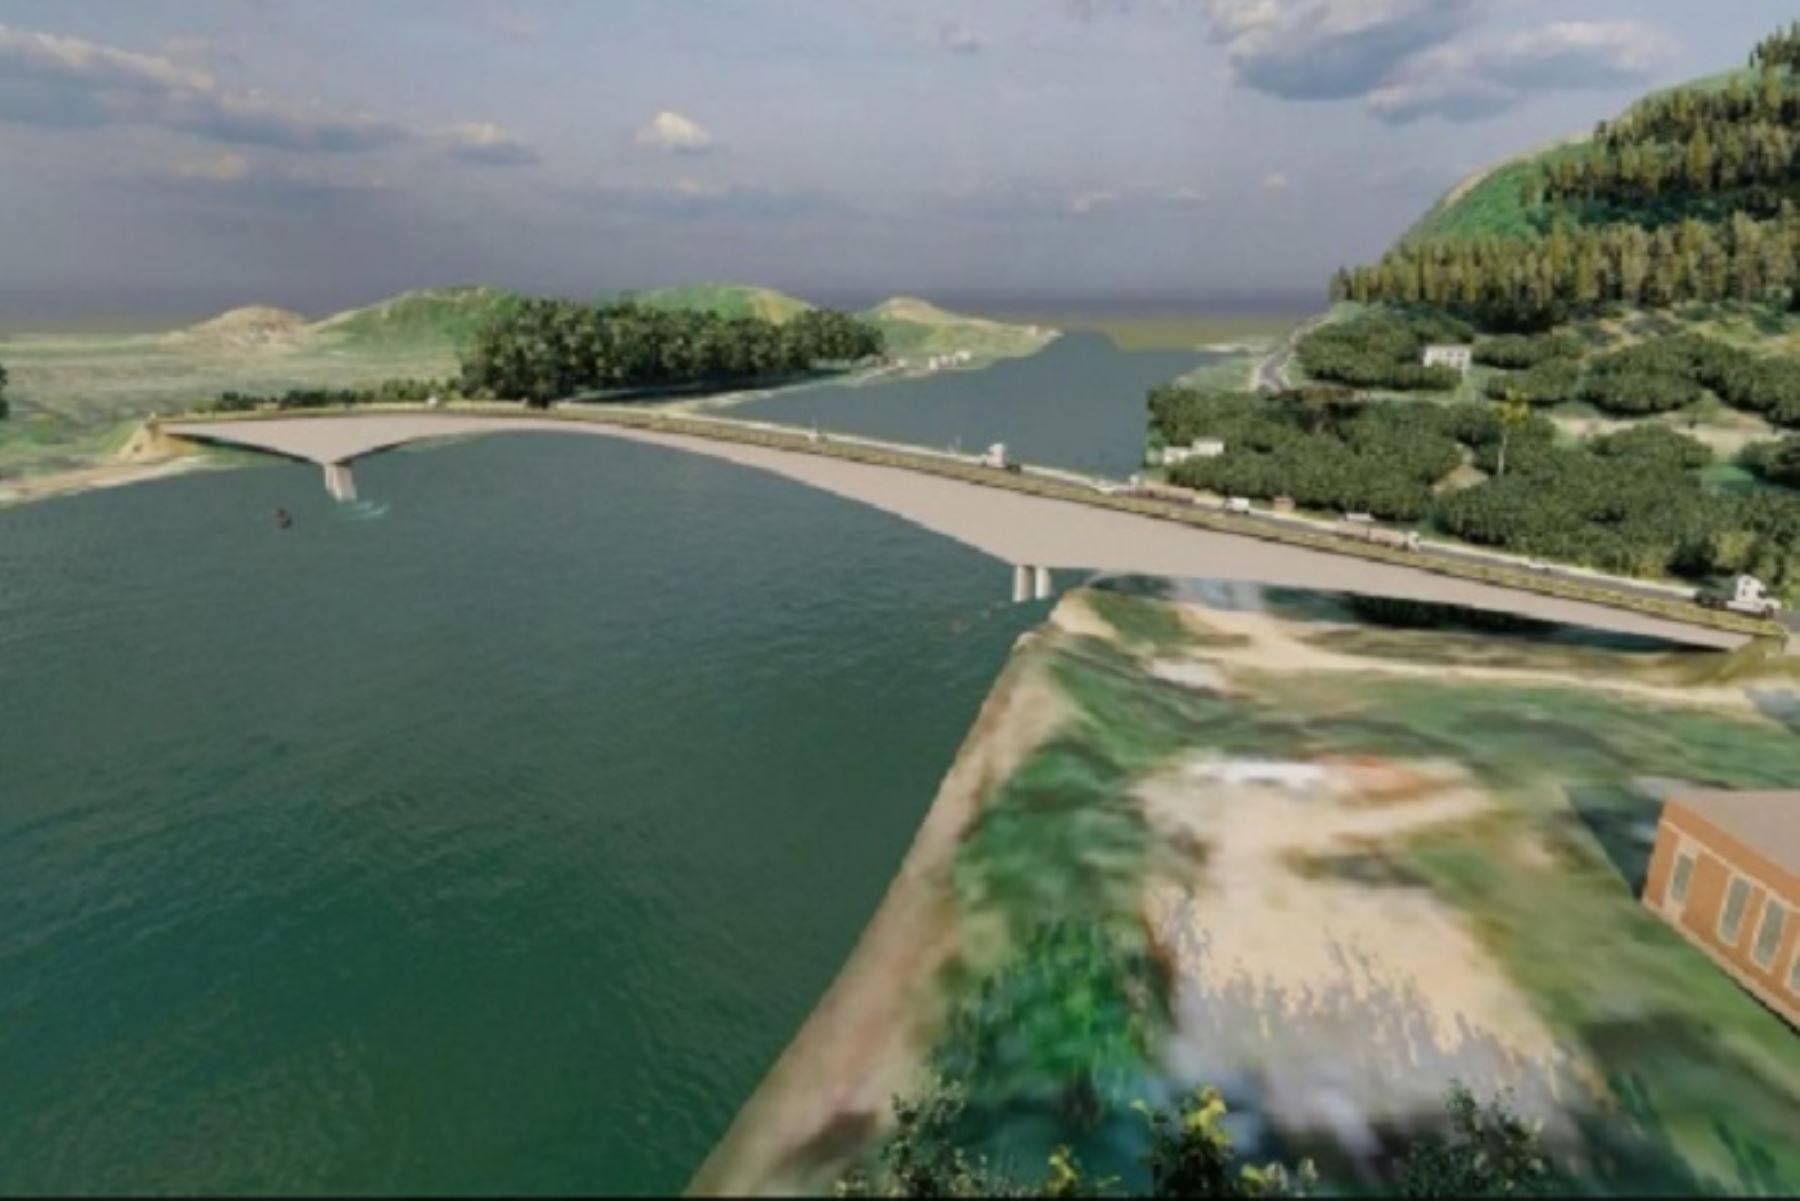 El puente tendrá 510 metros de longitud, doble vía y accesos asfaltados en ambas márgenes del río Huallaga.